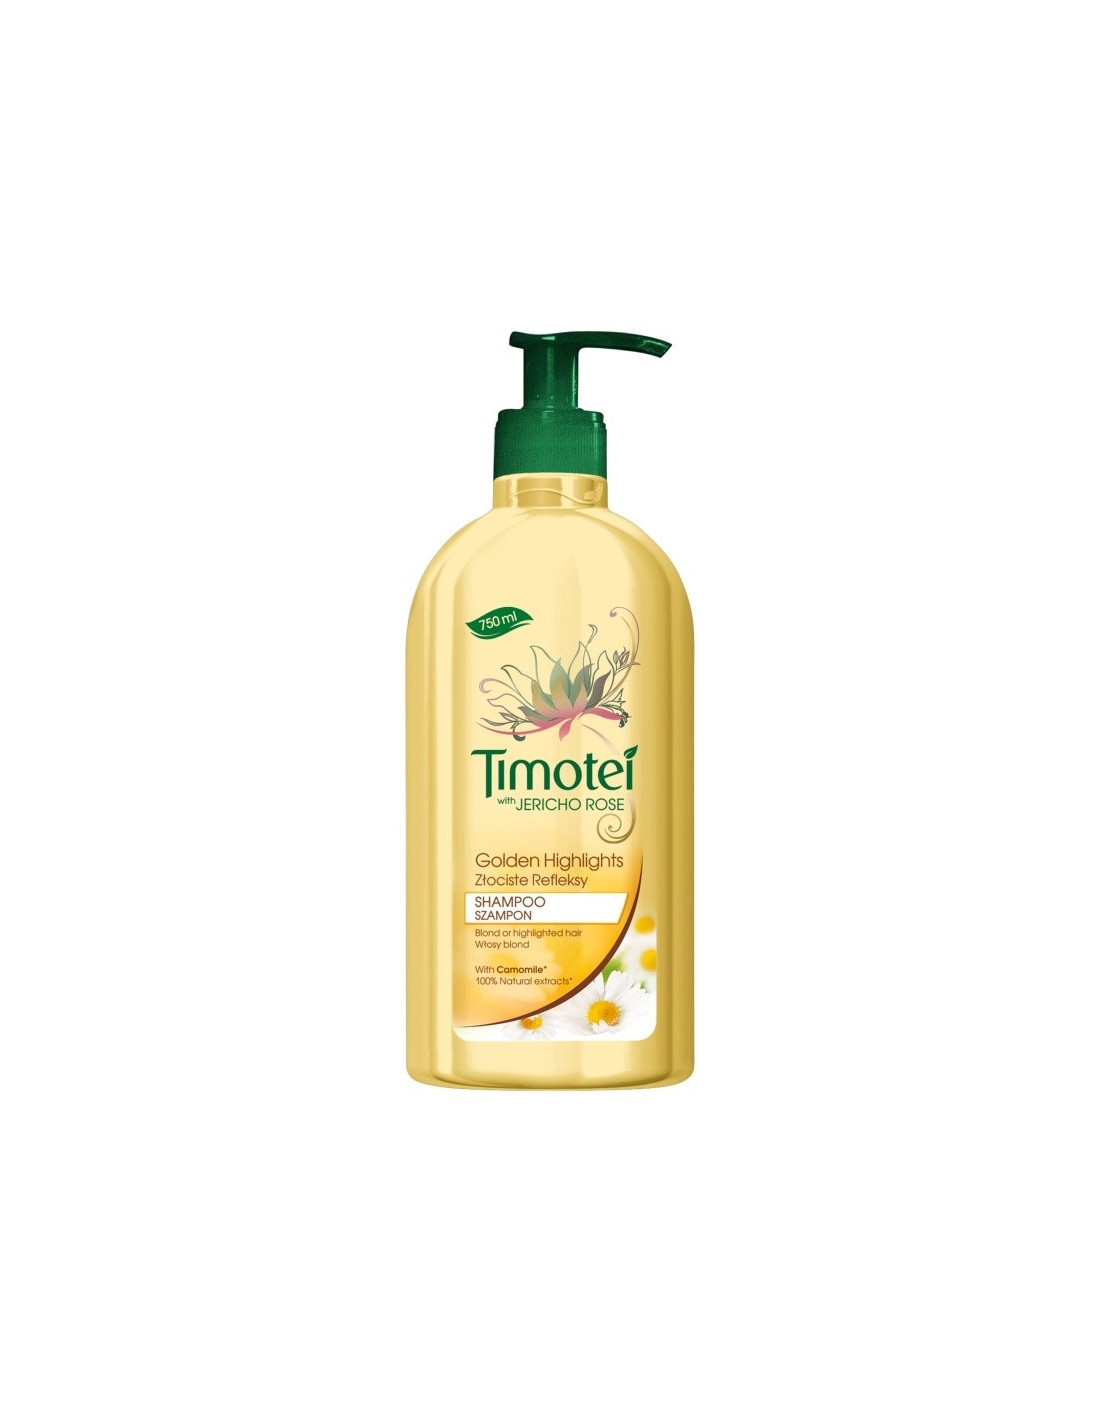 szampon timotei skład podany w ml